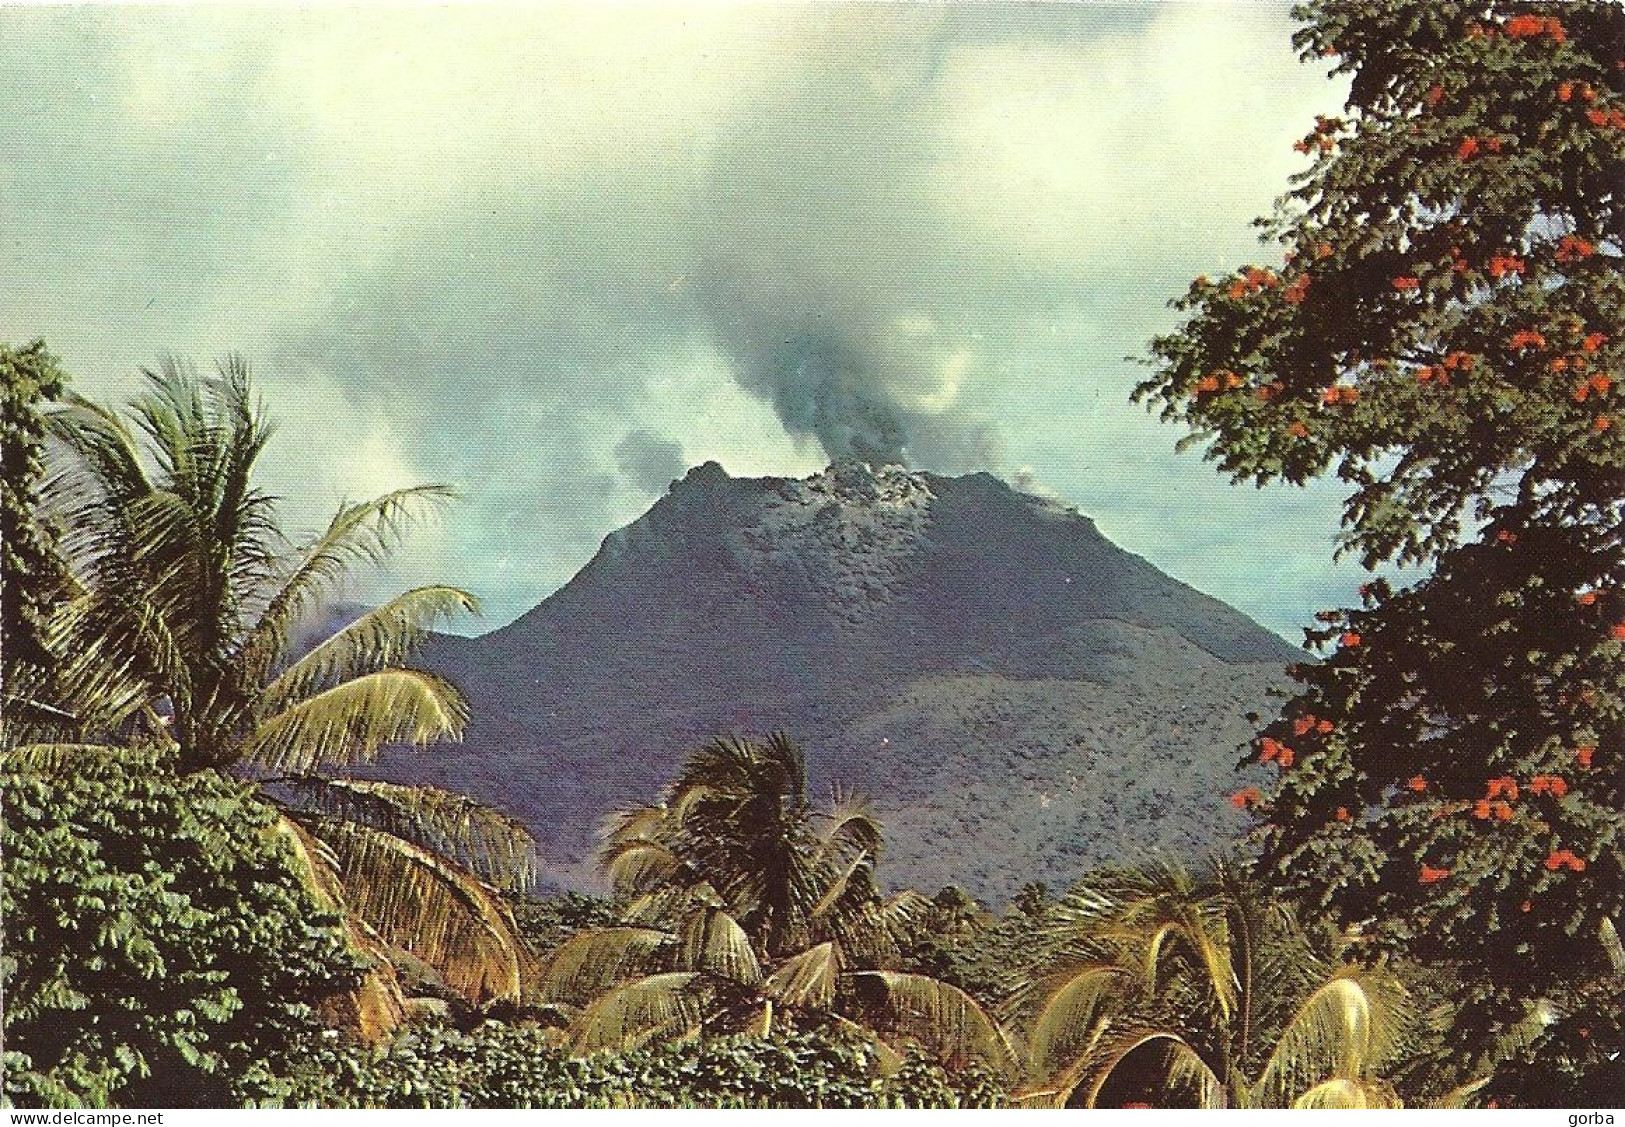 *CPM - 971 - GUADELOUPE - SAINT CLAUDE - Éruption De La Soufrière - Basse Terre